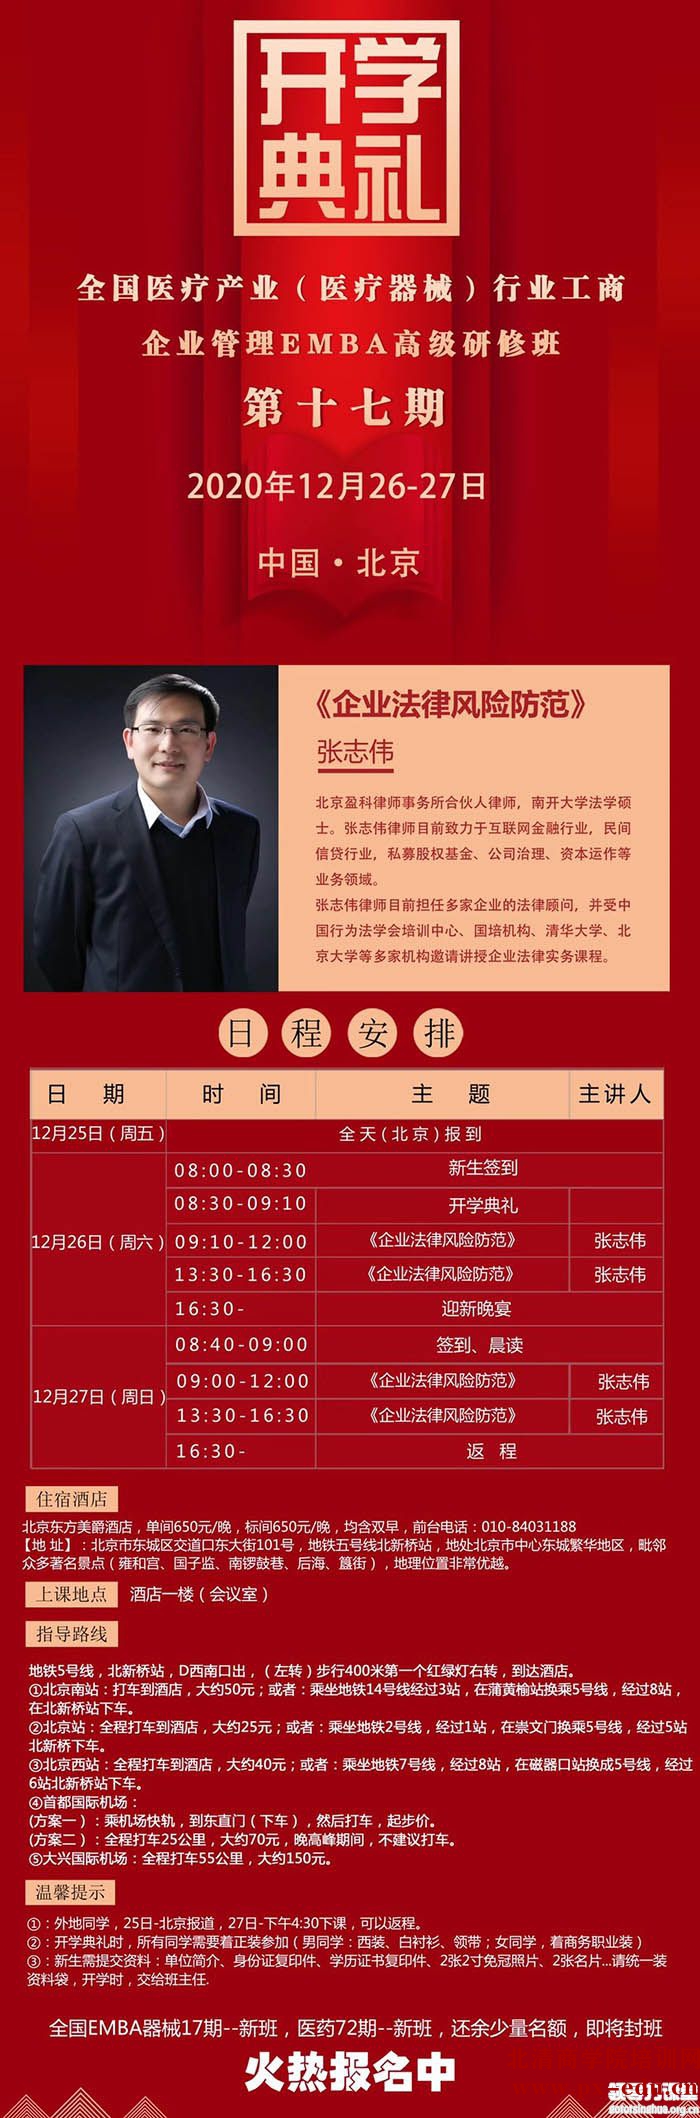 12月26-27日全国医药行业工商企业管理研修班:张志伟